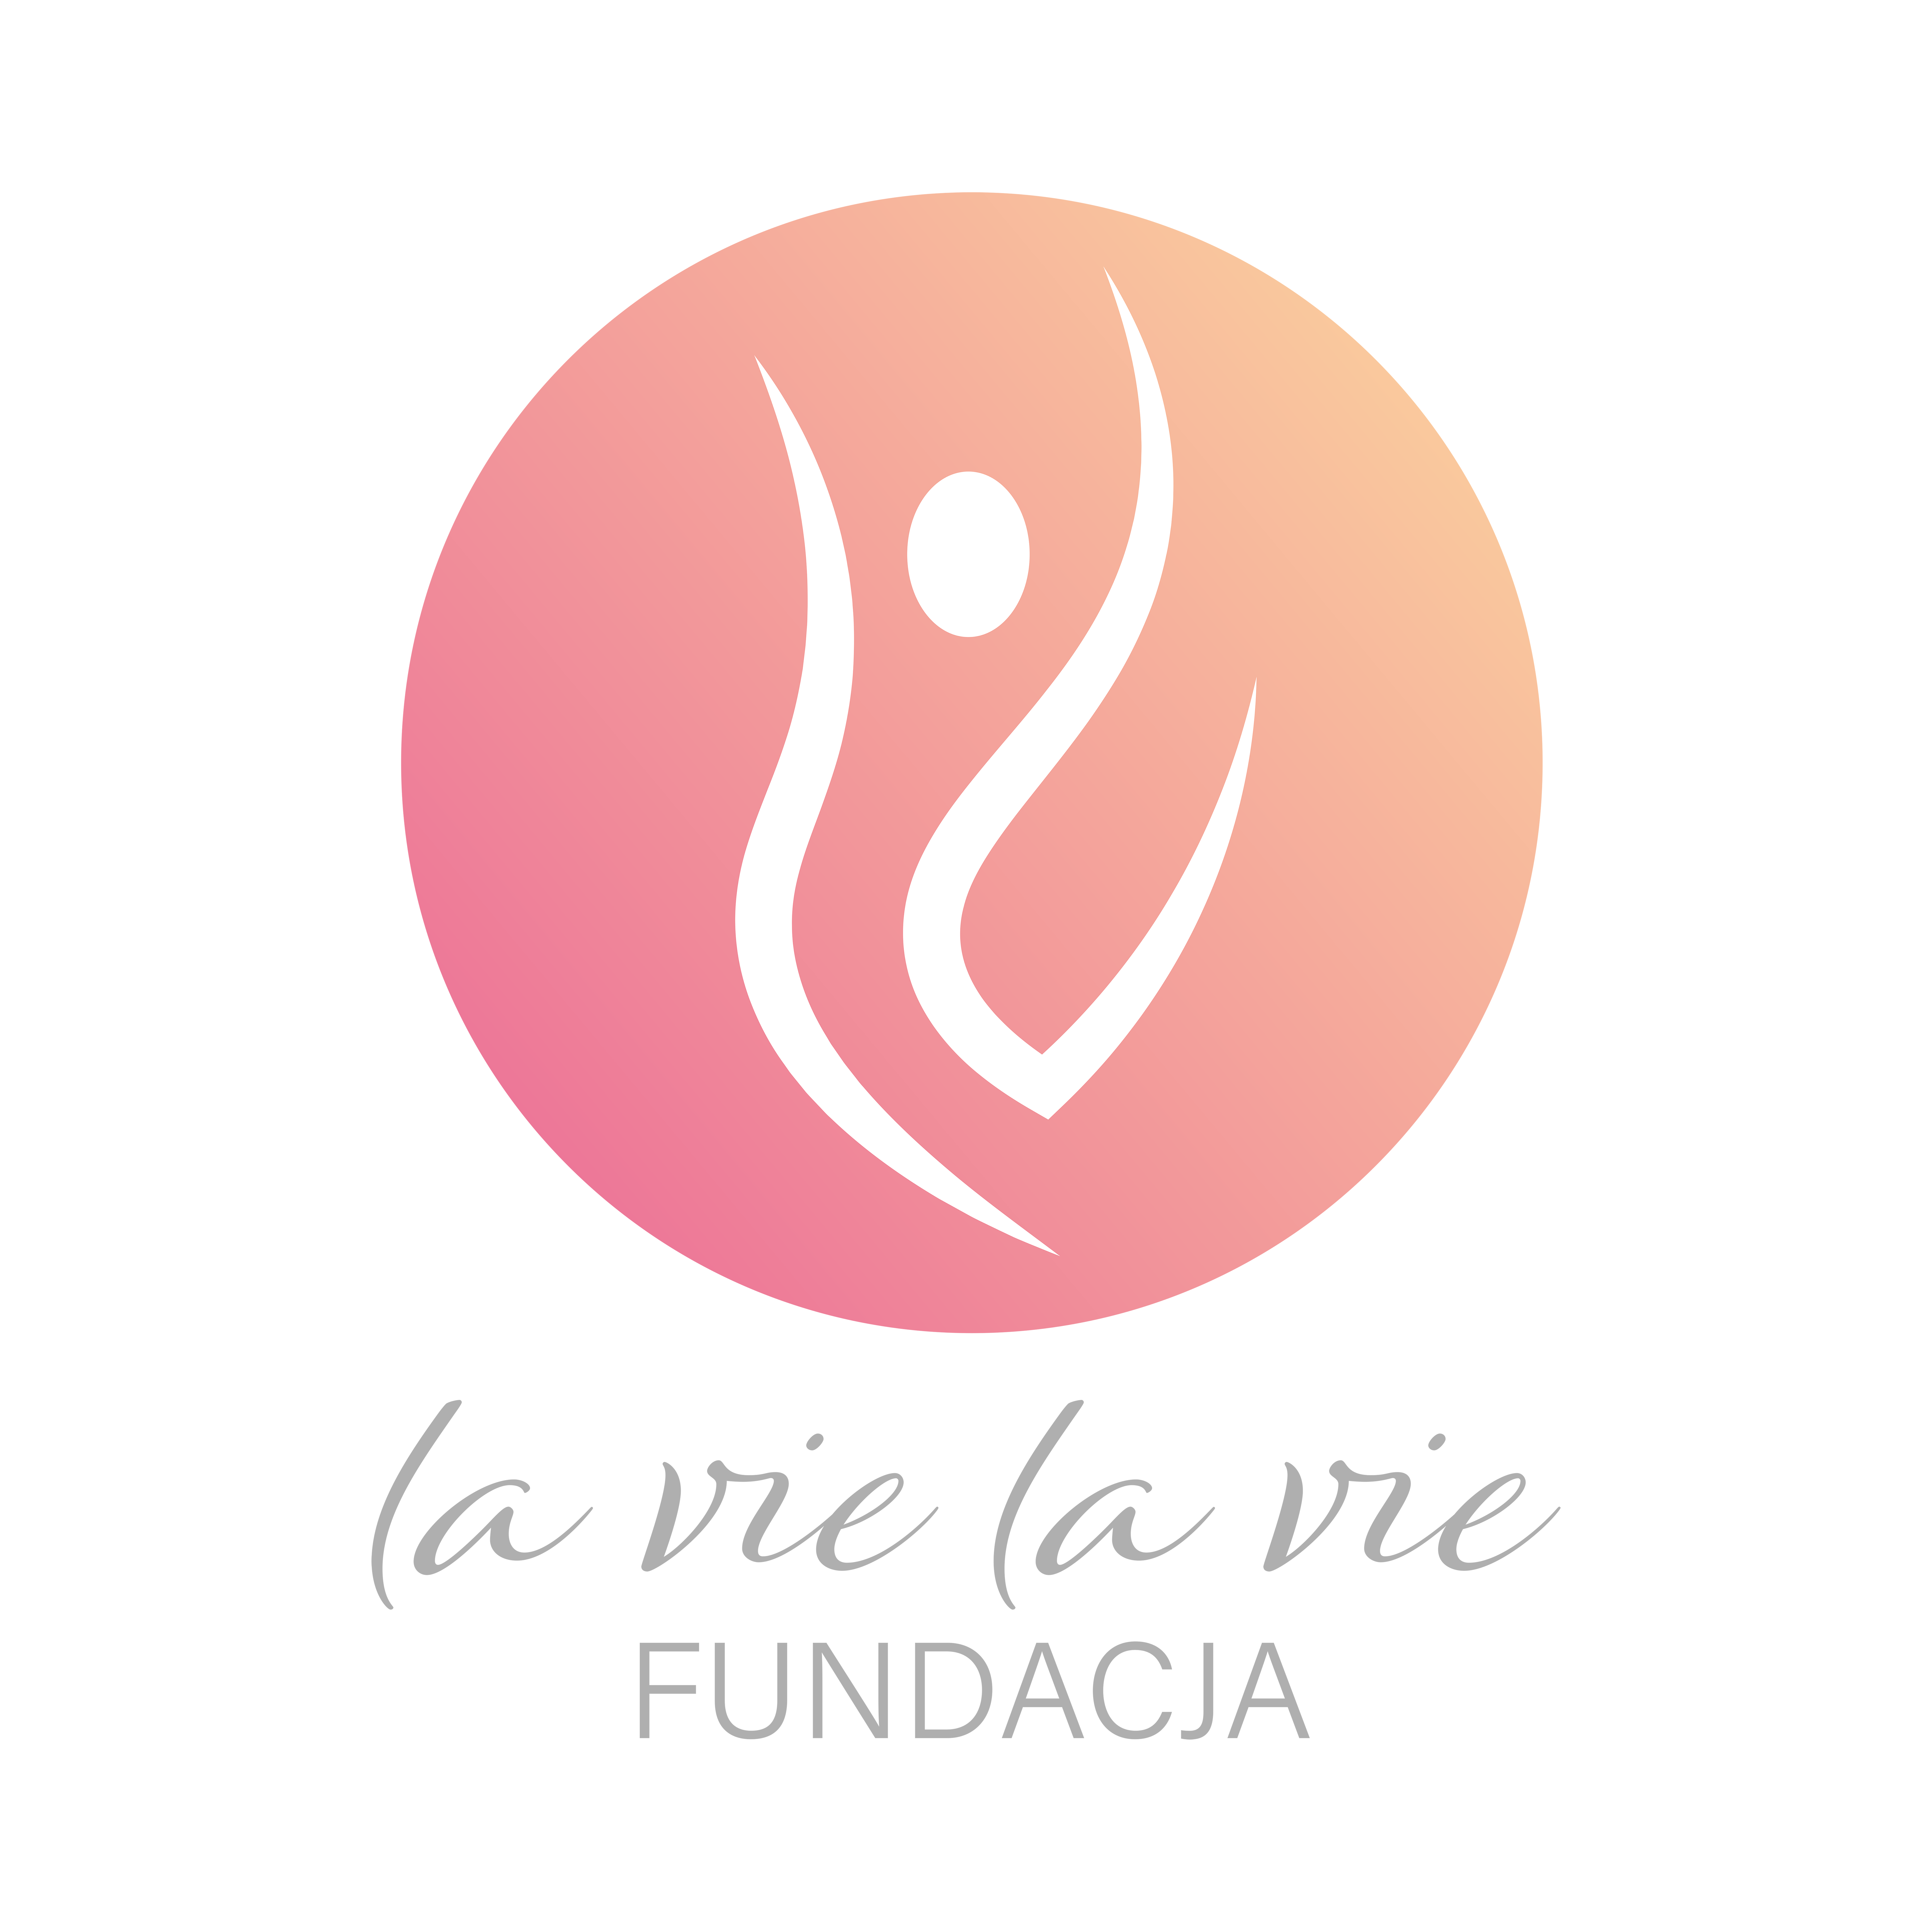 Fundacja La vie La vie